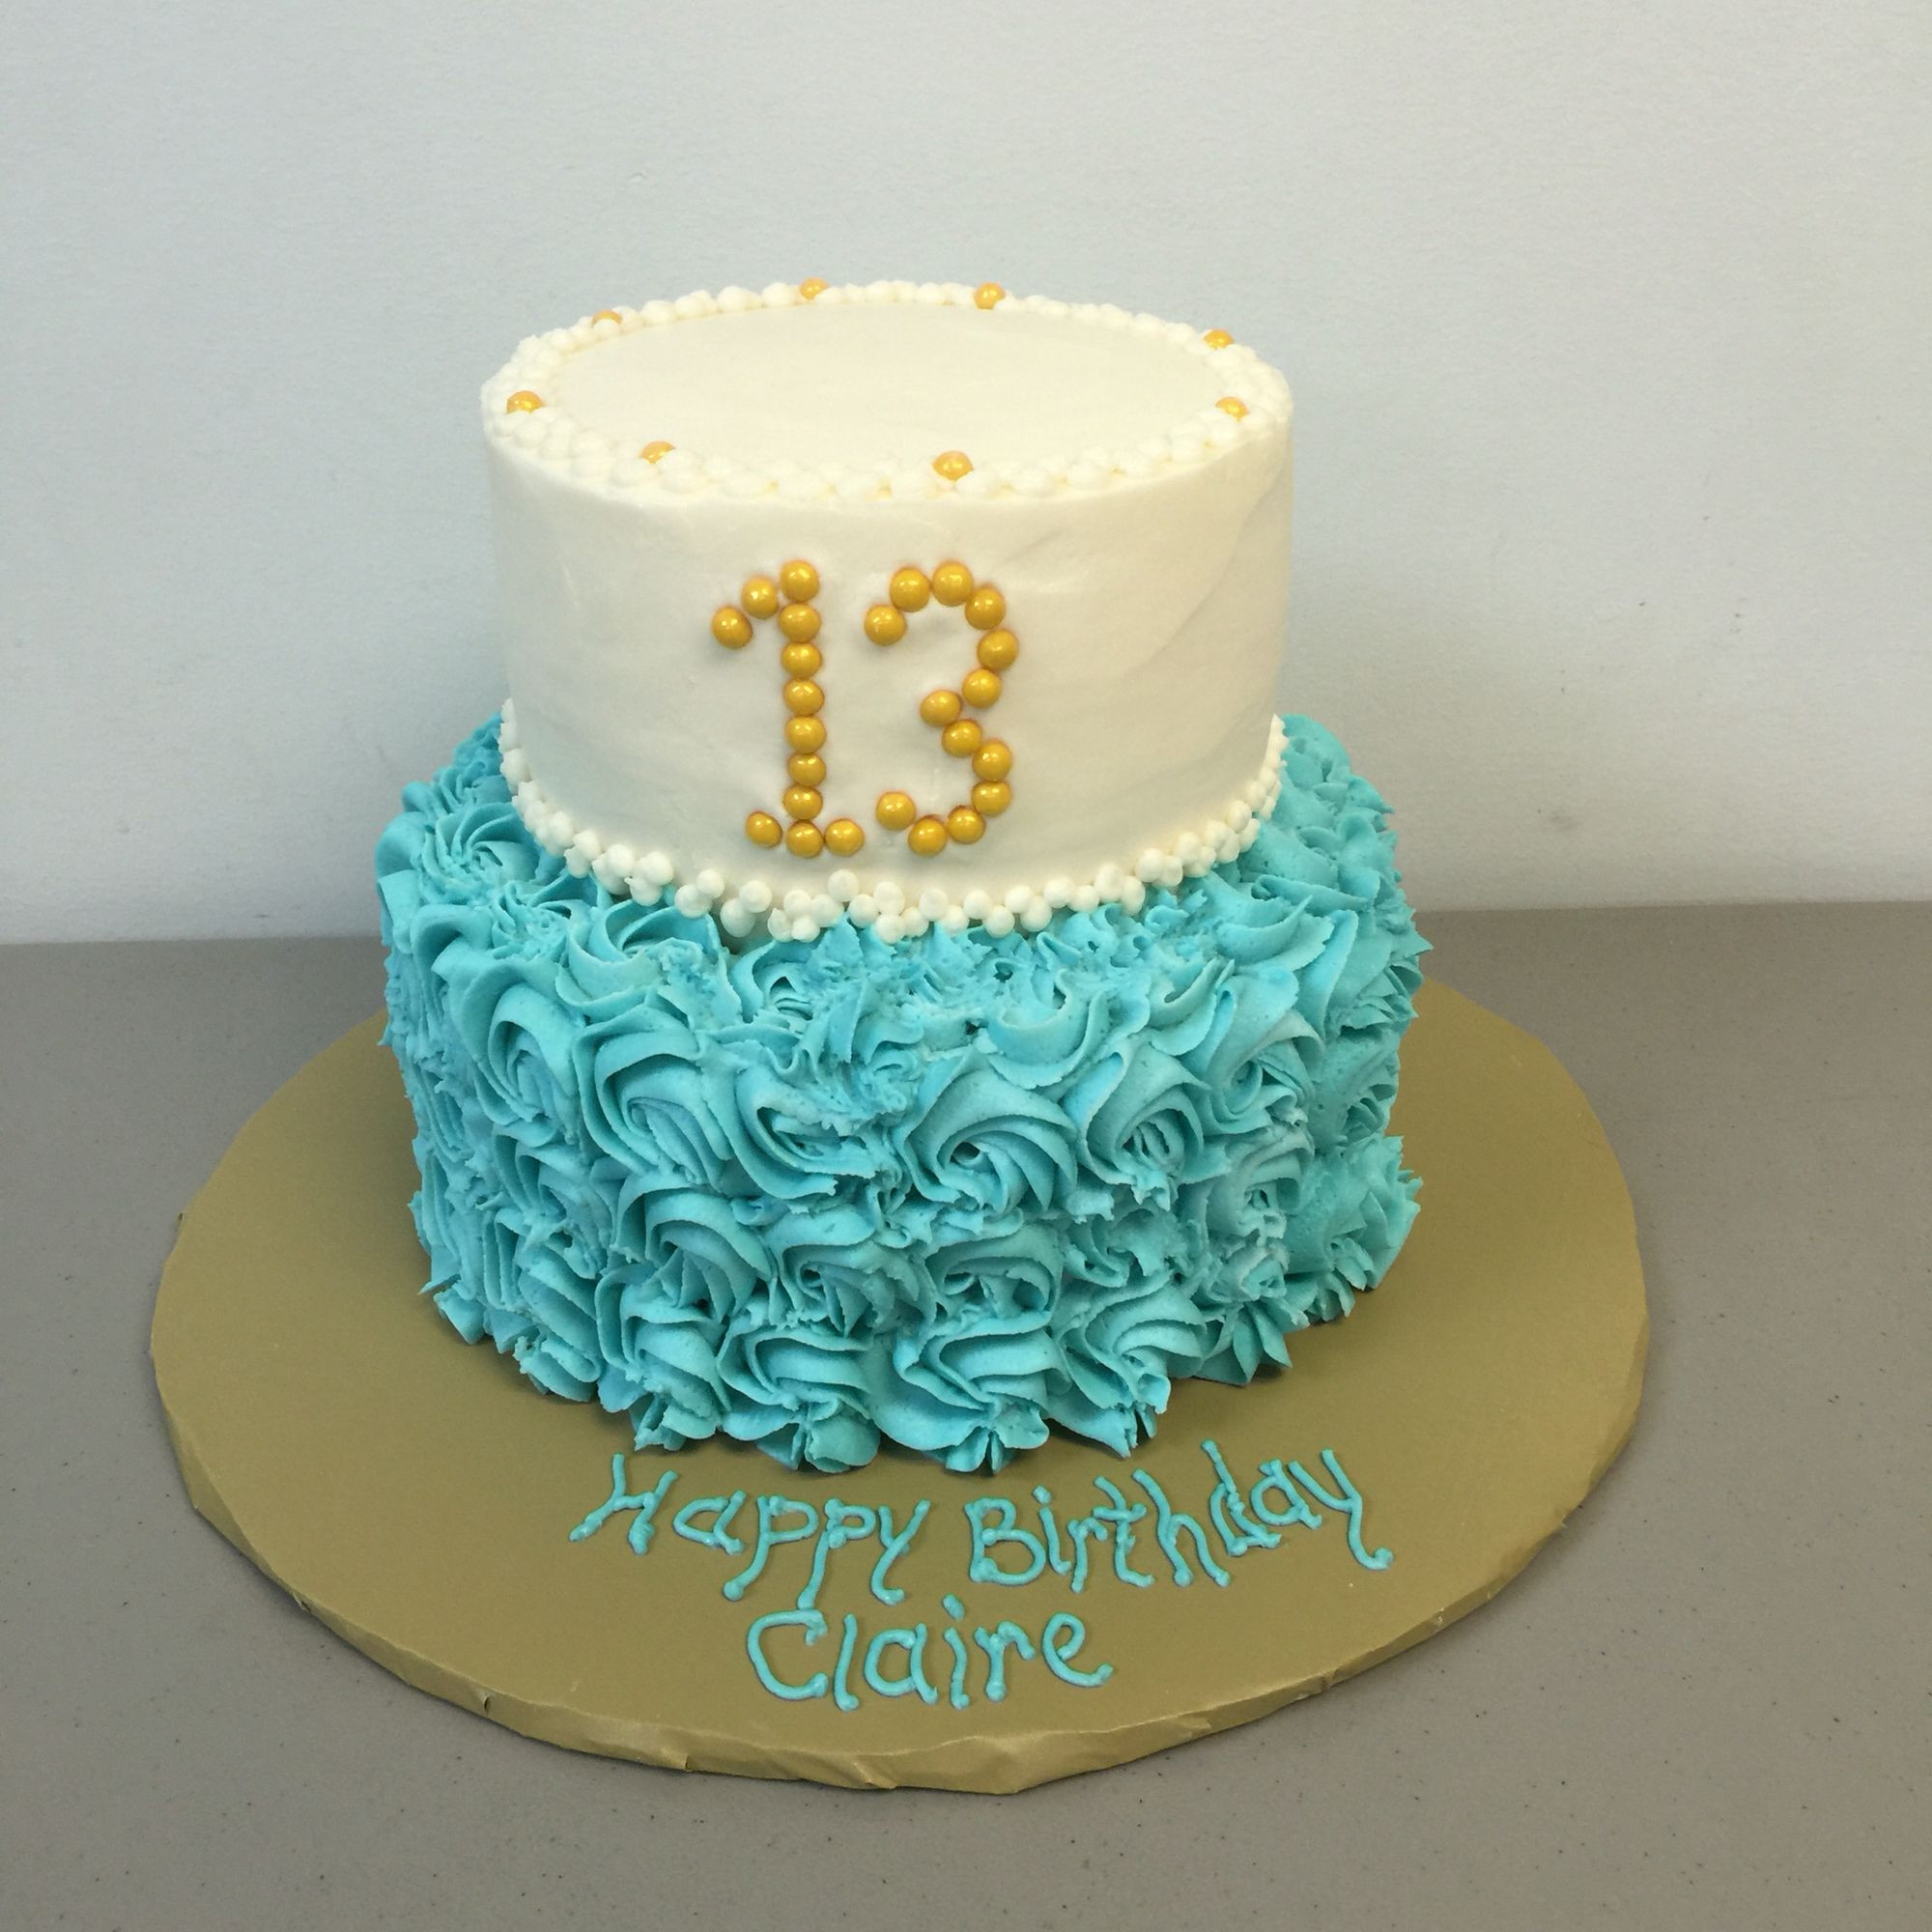 13 Year Old Birthday Cakes
 13 year old Birthday cake